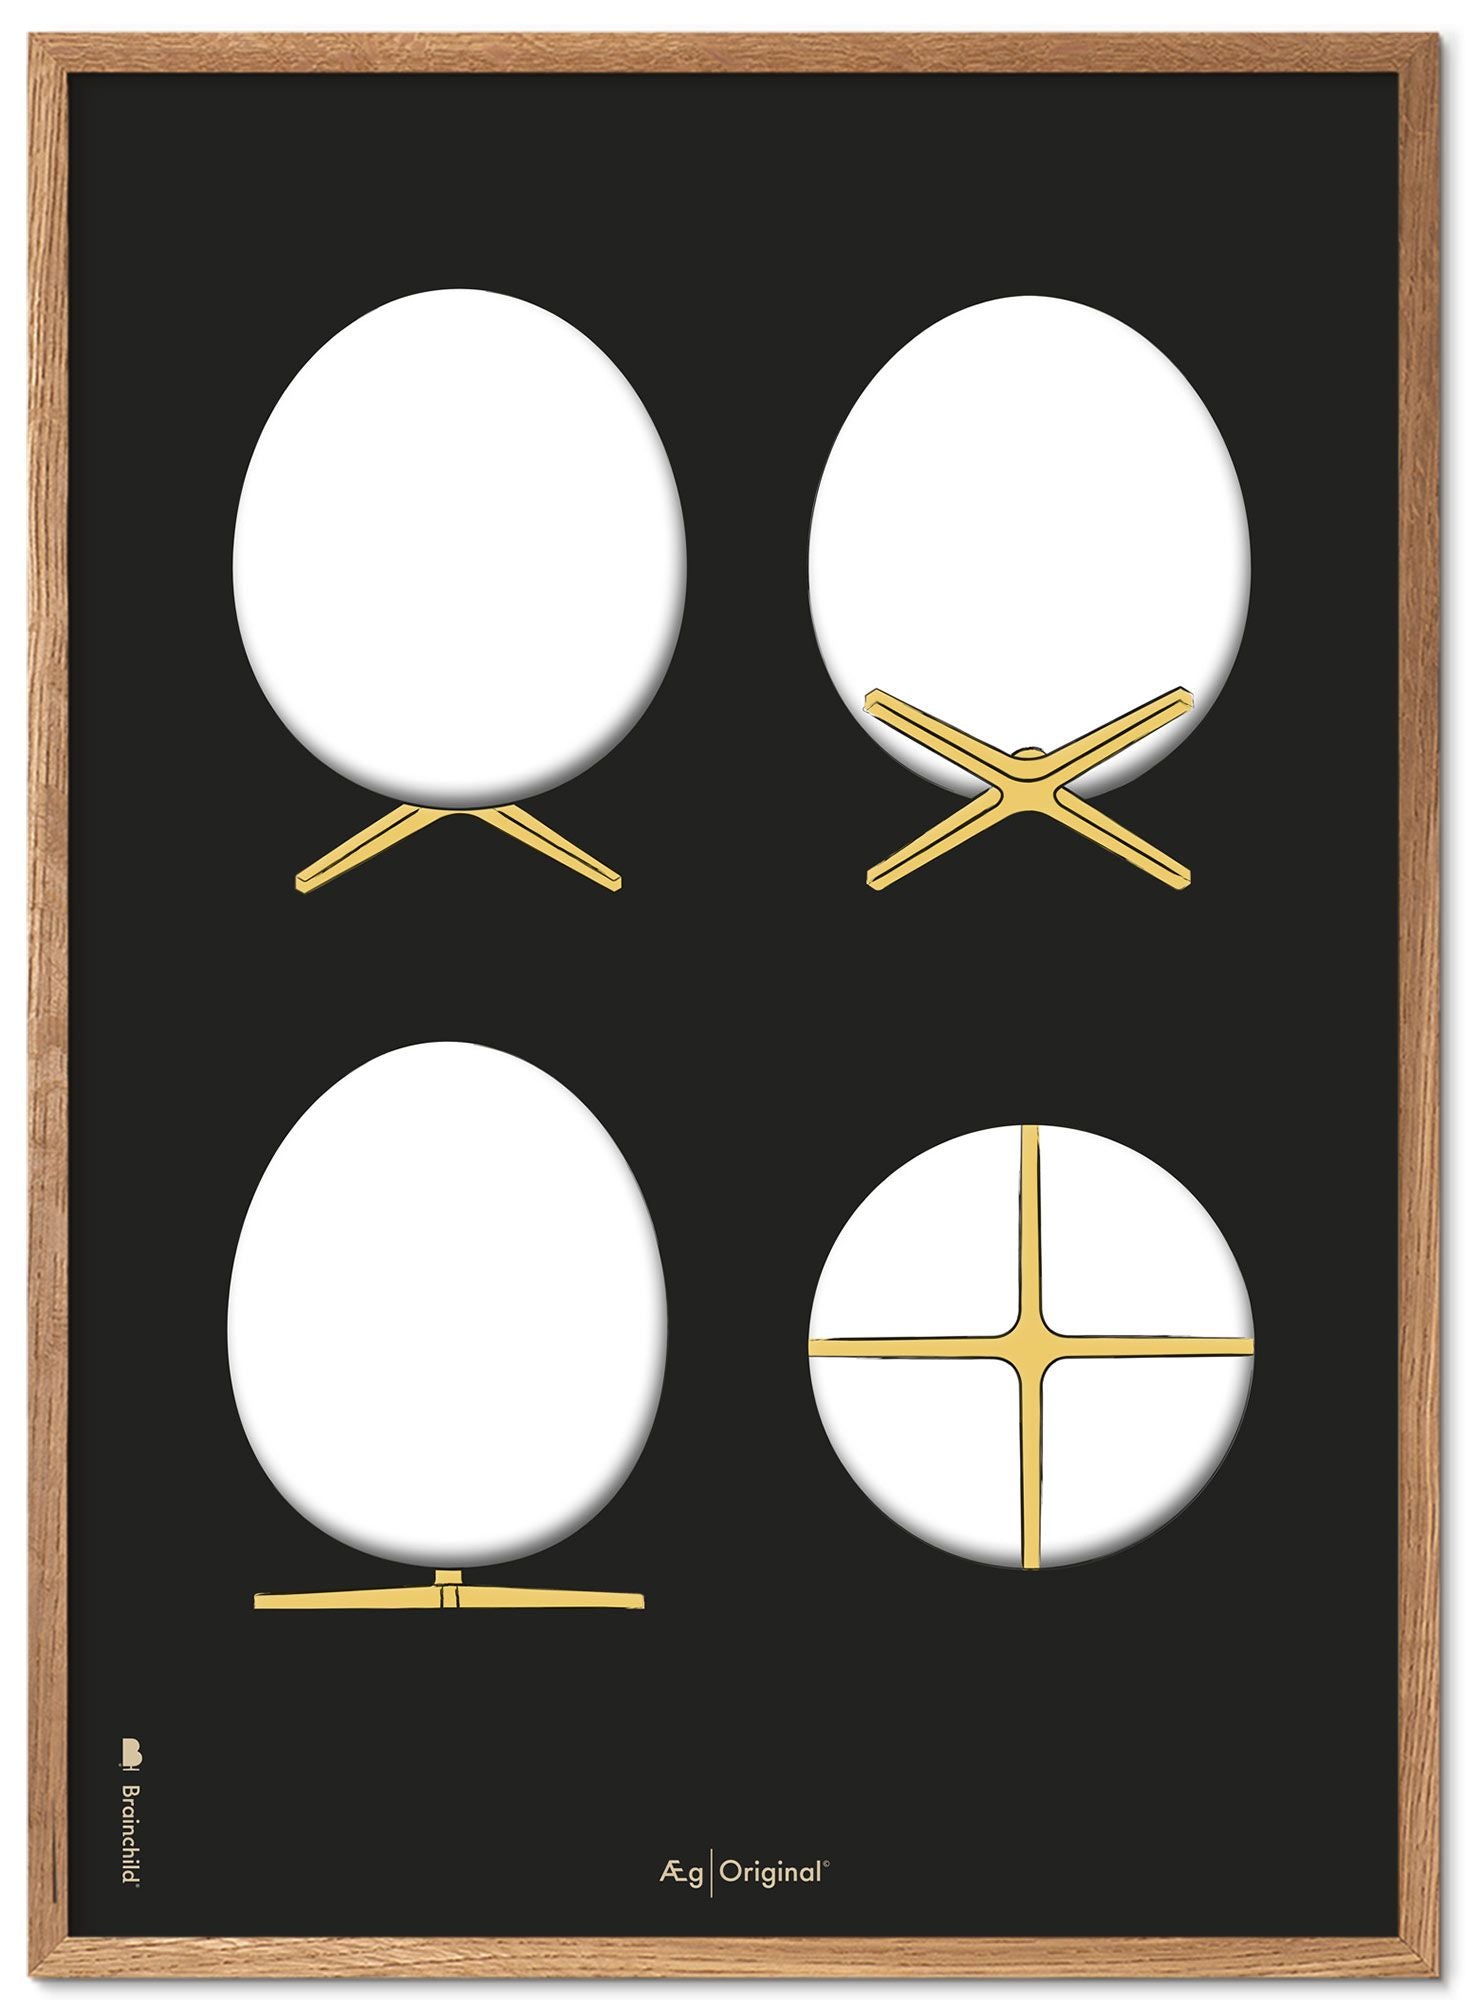 Prepare el marco de póster de bocetos de diseño de huevo hecho de madera clara A5, fondo negro